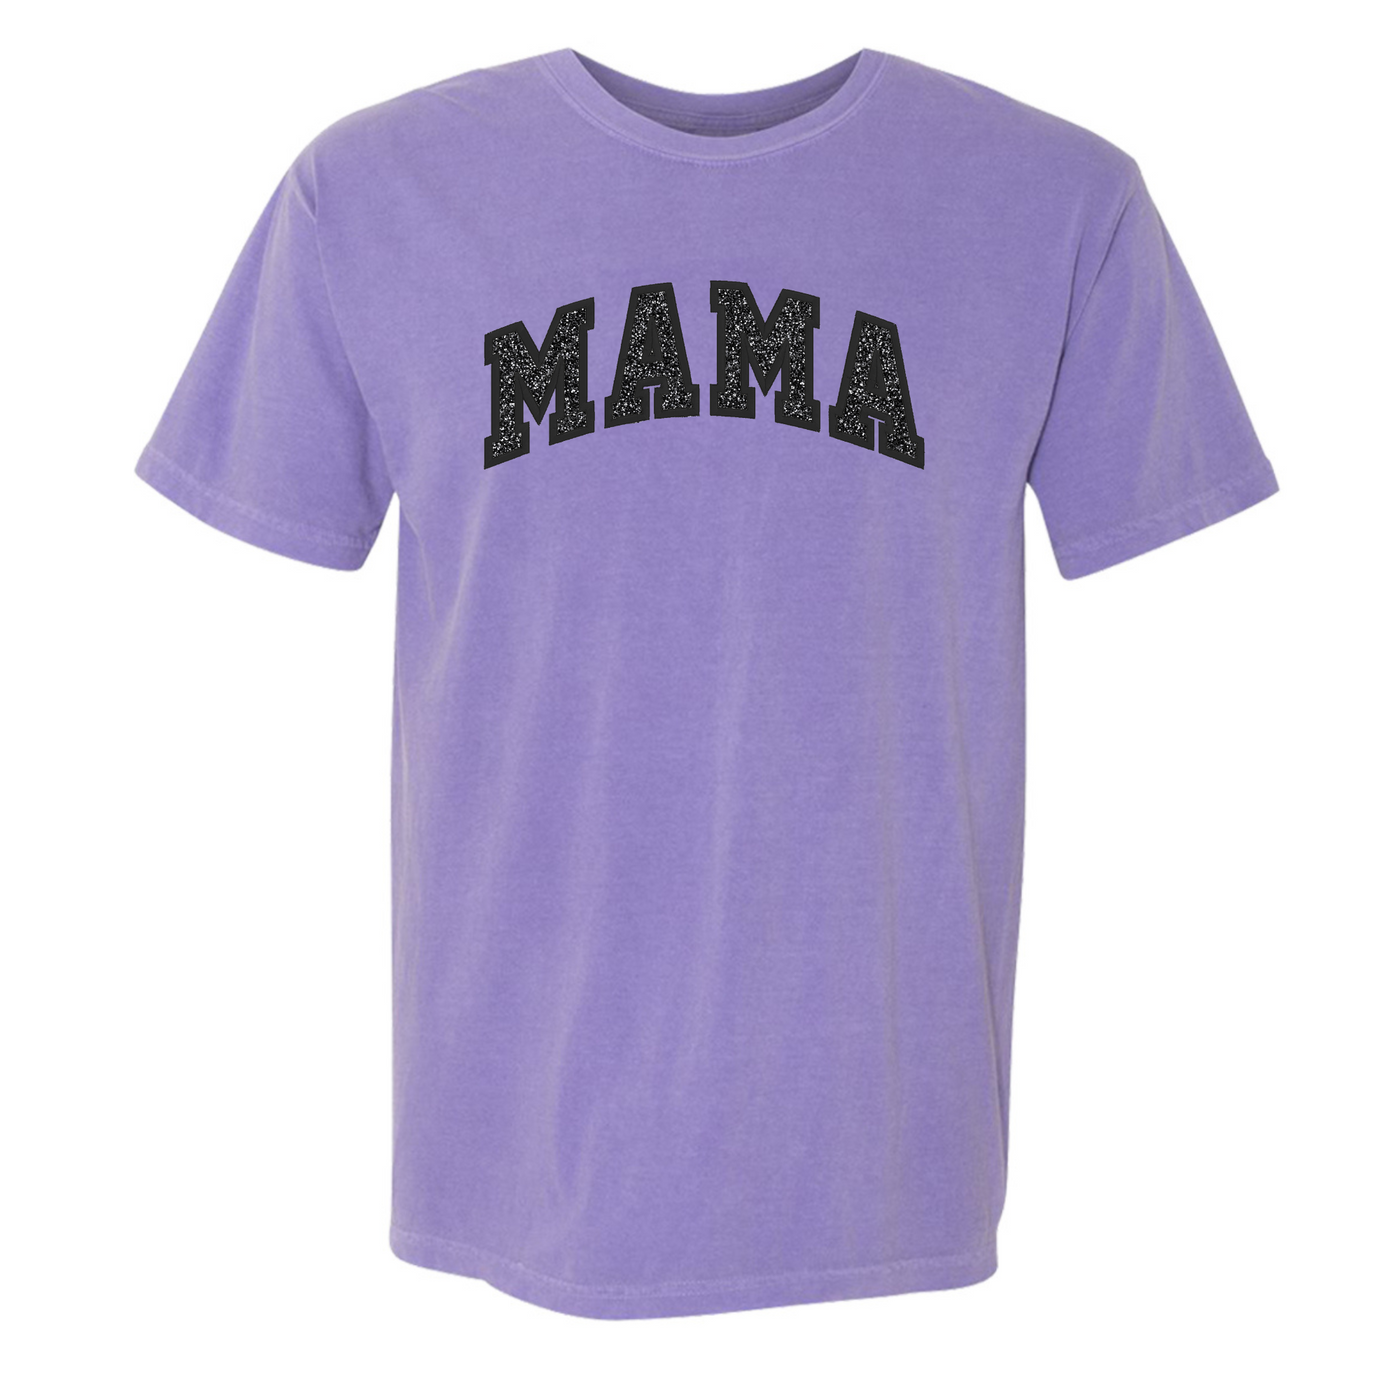 Glitter Embroidery ‘Mama’ T-Shirt